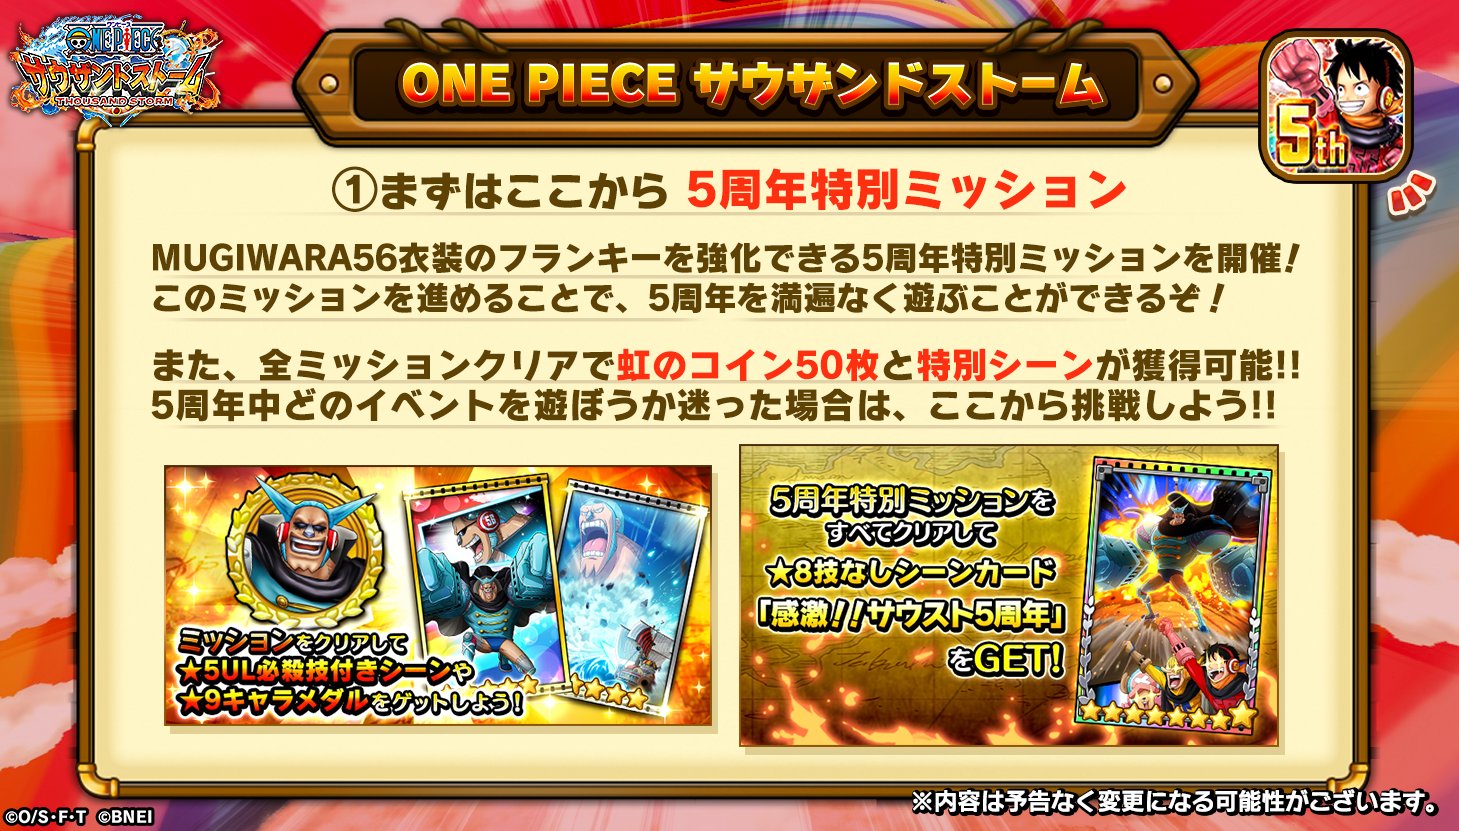 One Piece サウザンドストーム 5周年特別ミッション Mugiwara５６衣装のフランキーを強化できるミッションで このミッションを進めると５周年を満遍なく遊べます 全ミッションクリアで虹のコイン50枚や特別な 8技なしシーンカードを獲得できます